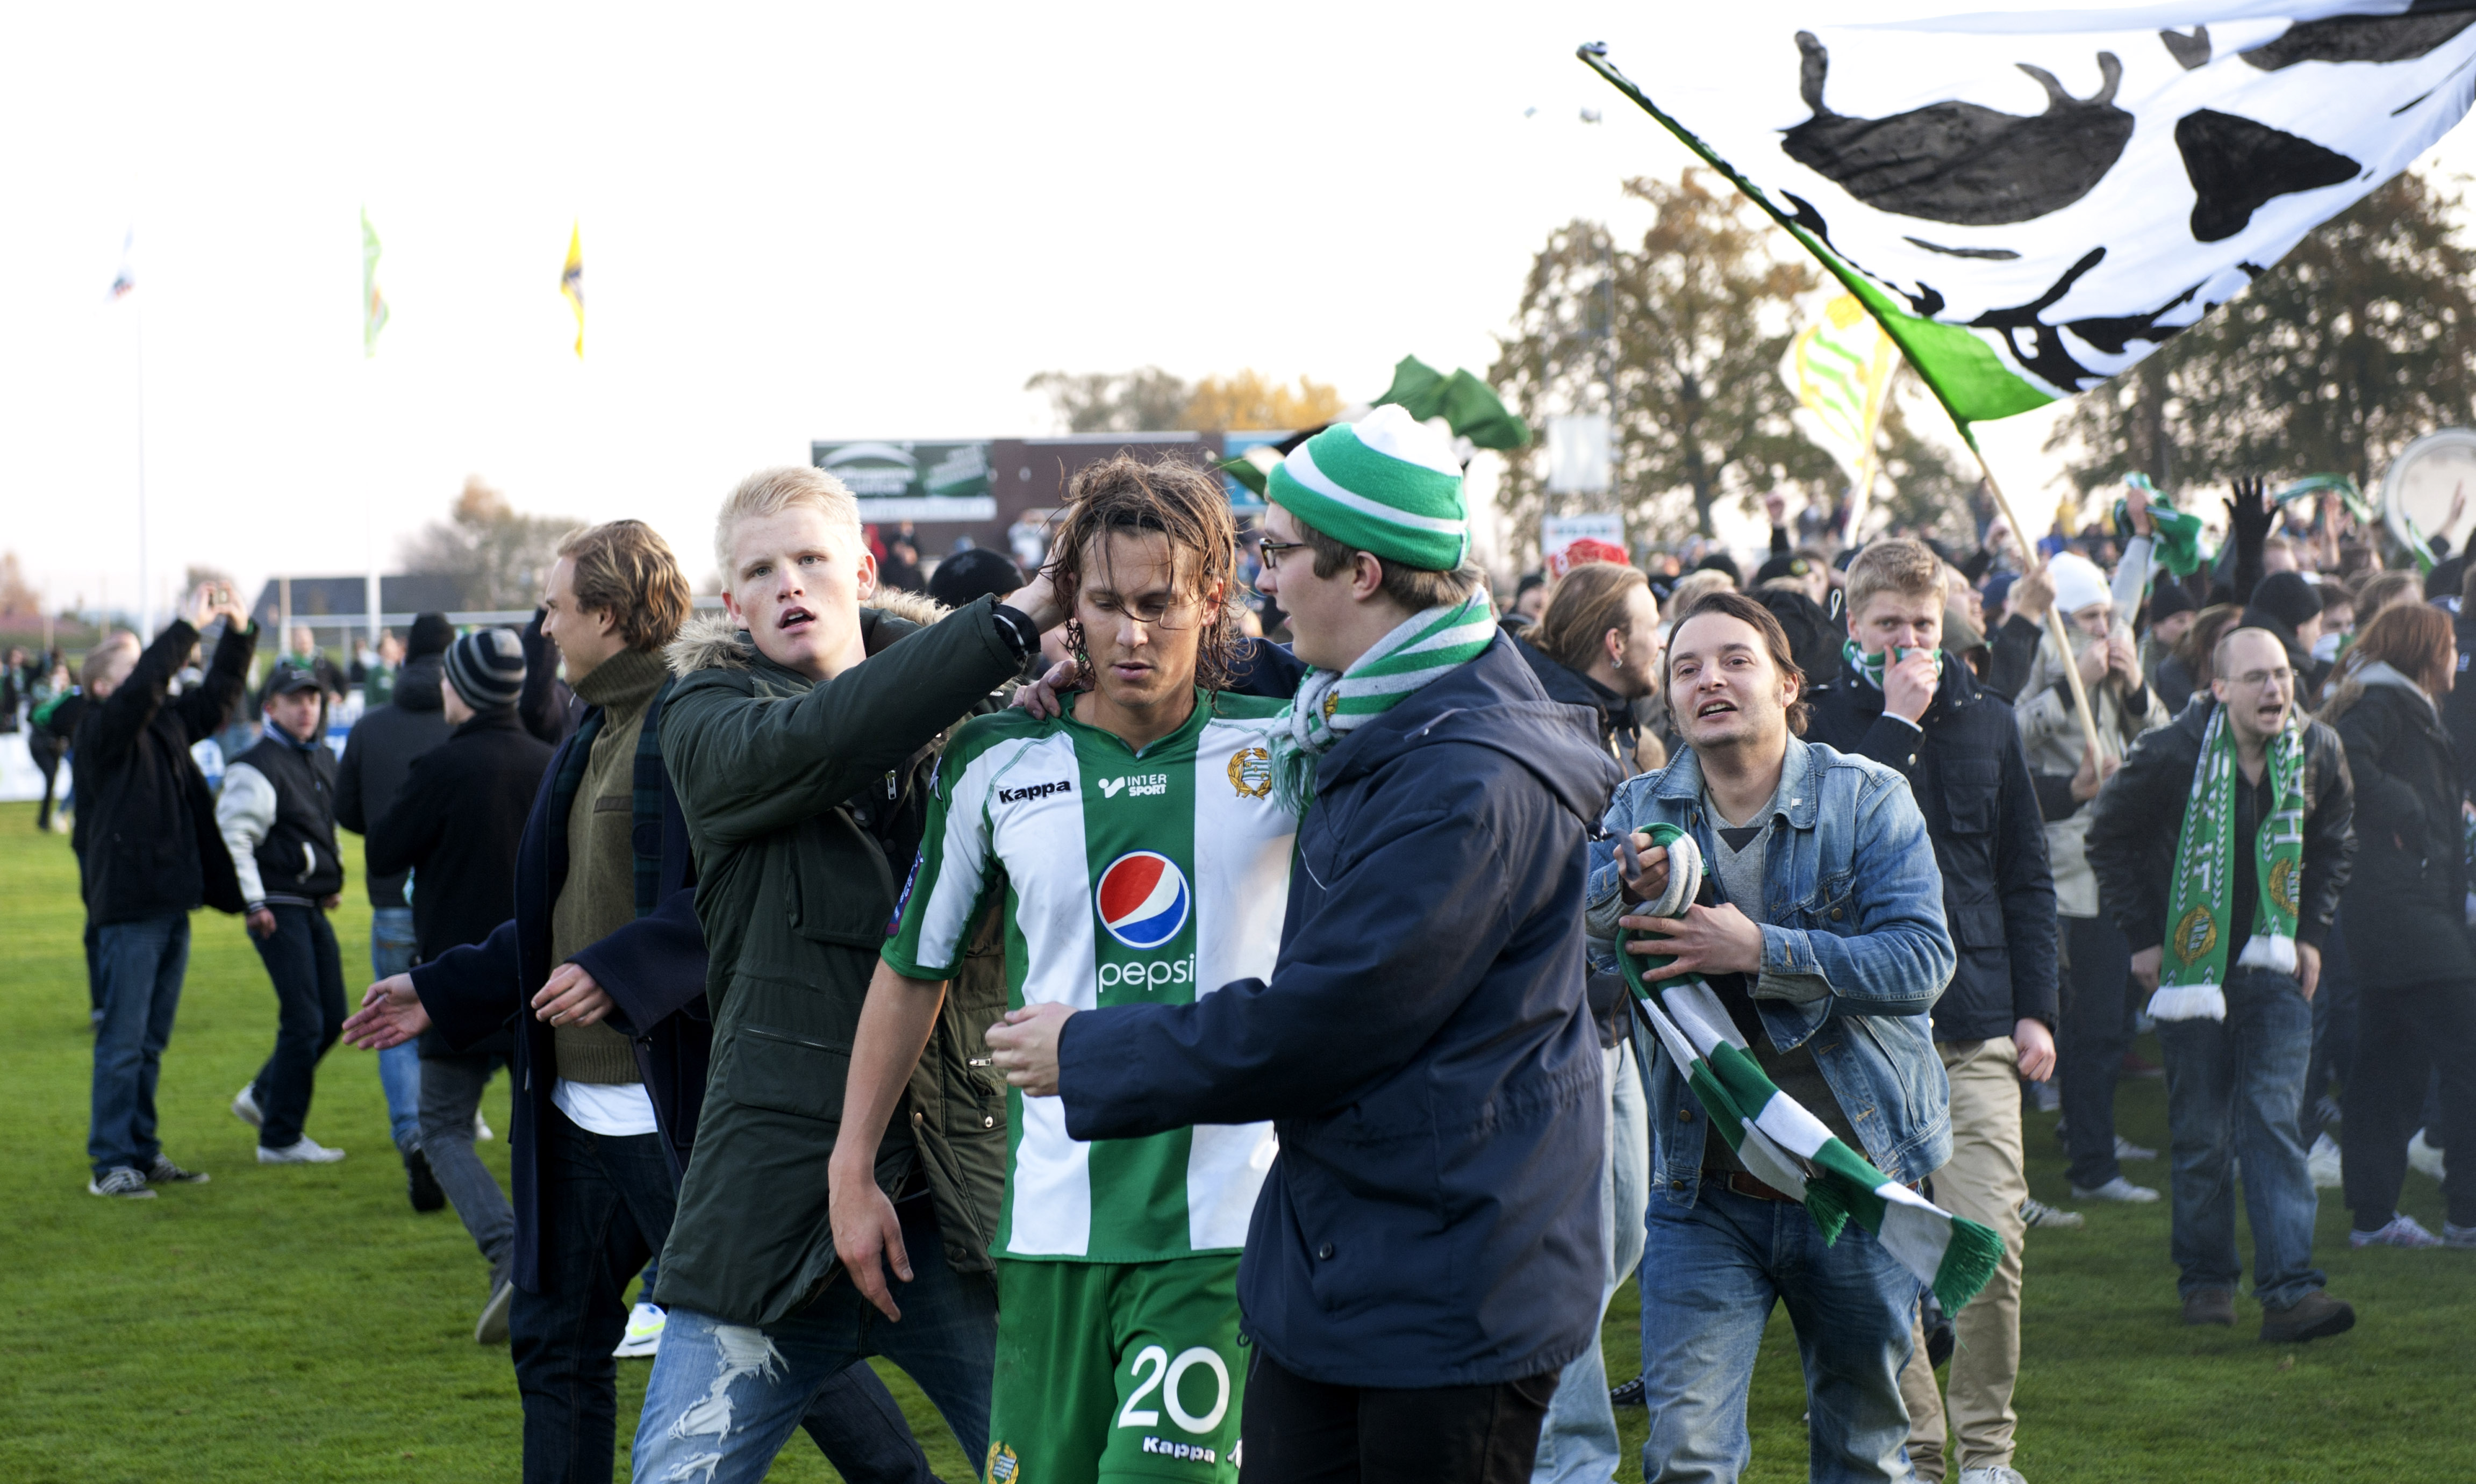 Björn Runströms framtid är ännu osäker, dock kan han säkerligen glädjas åt fansens vägnar.